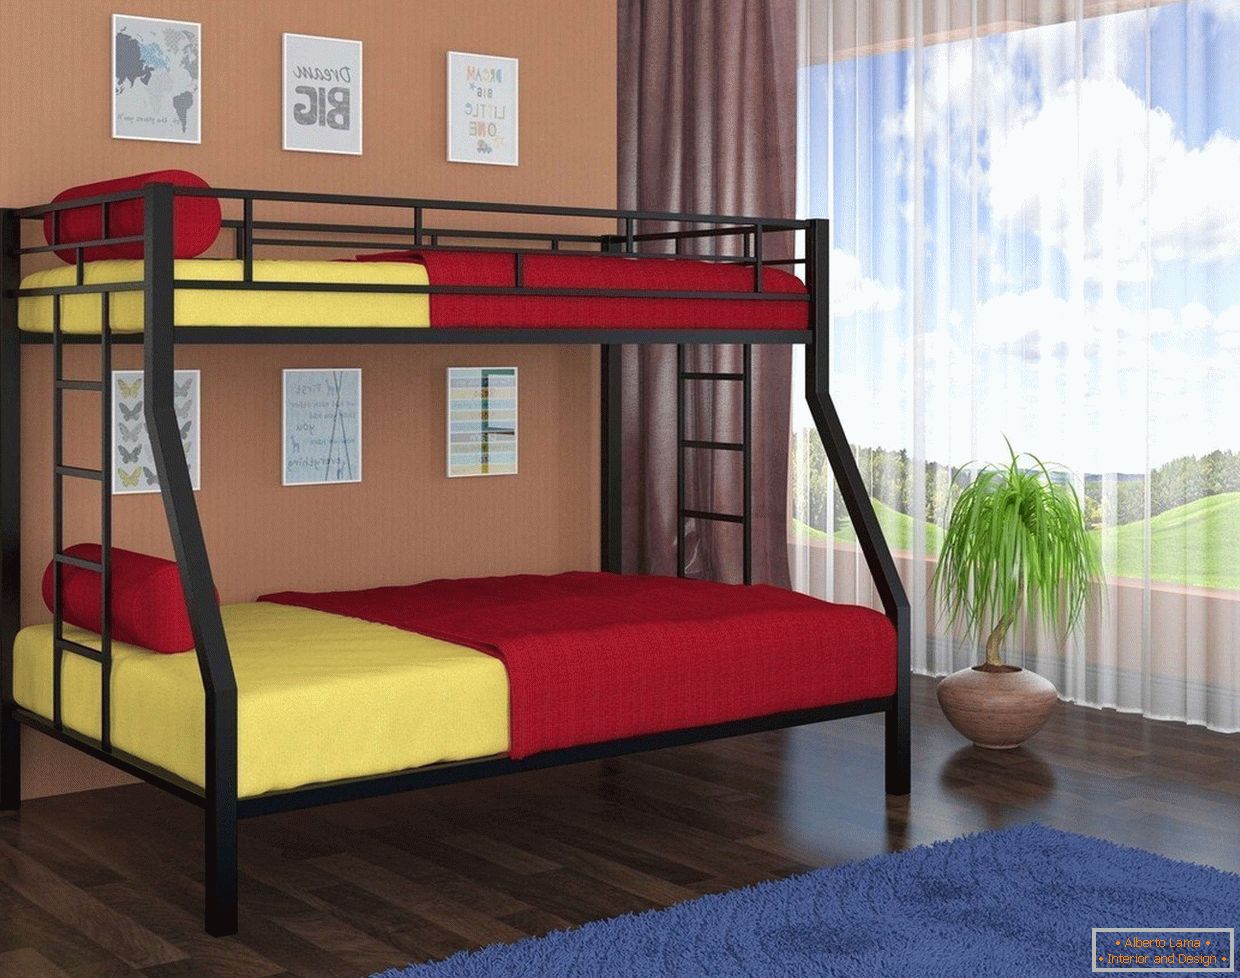 Gelbe und rote Bettwäsche in einem Etagenbett